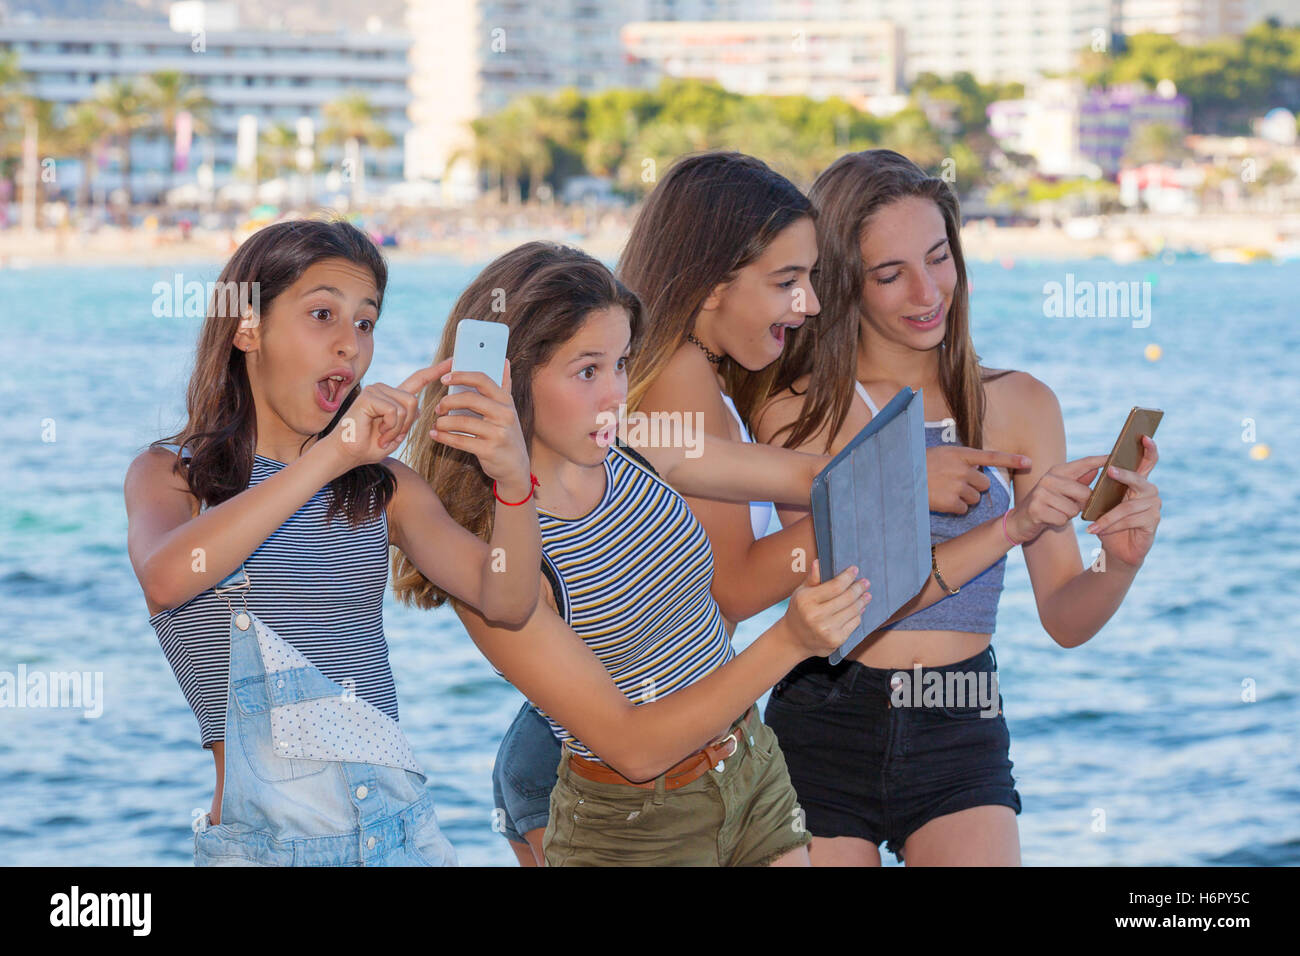 MAGALLUF, CALVIA, MALLORCA (Mallorca) Balearen, Spanien - 2016 Kinder mit Spiel Pokemon App auf dem Handy spielen und Stockfoto